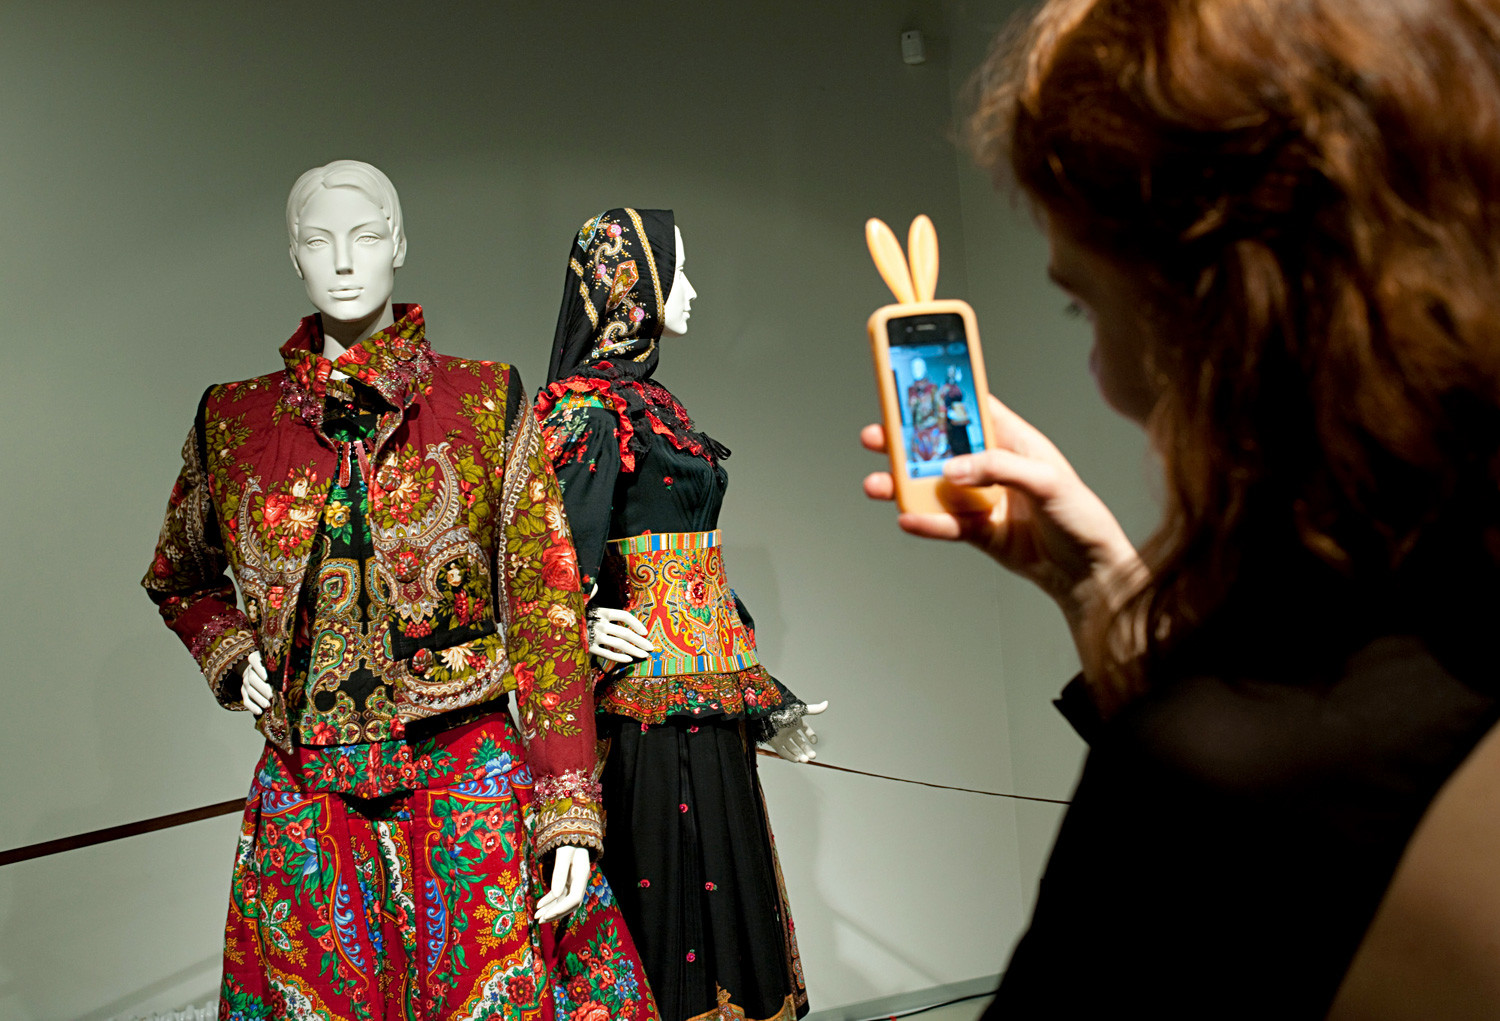 スラーヴァ・ザイツェフによる「ファッションの半世紀」展示館